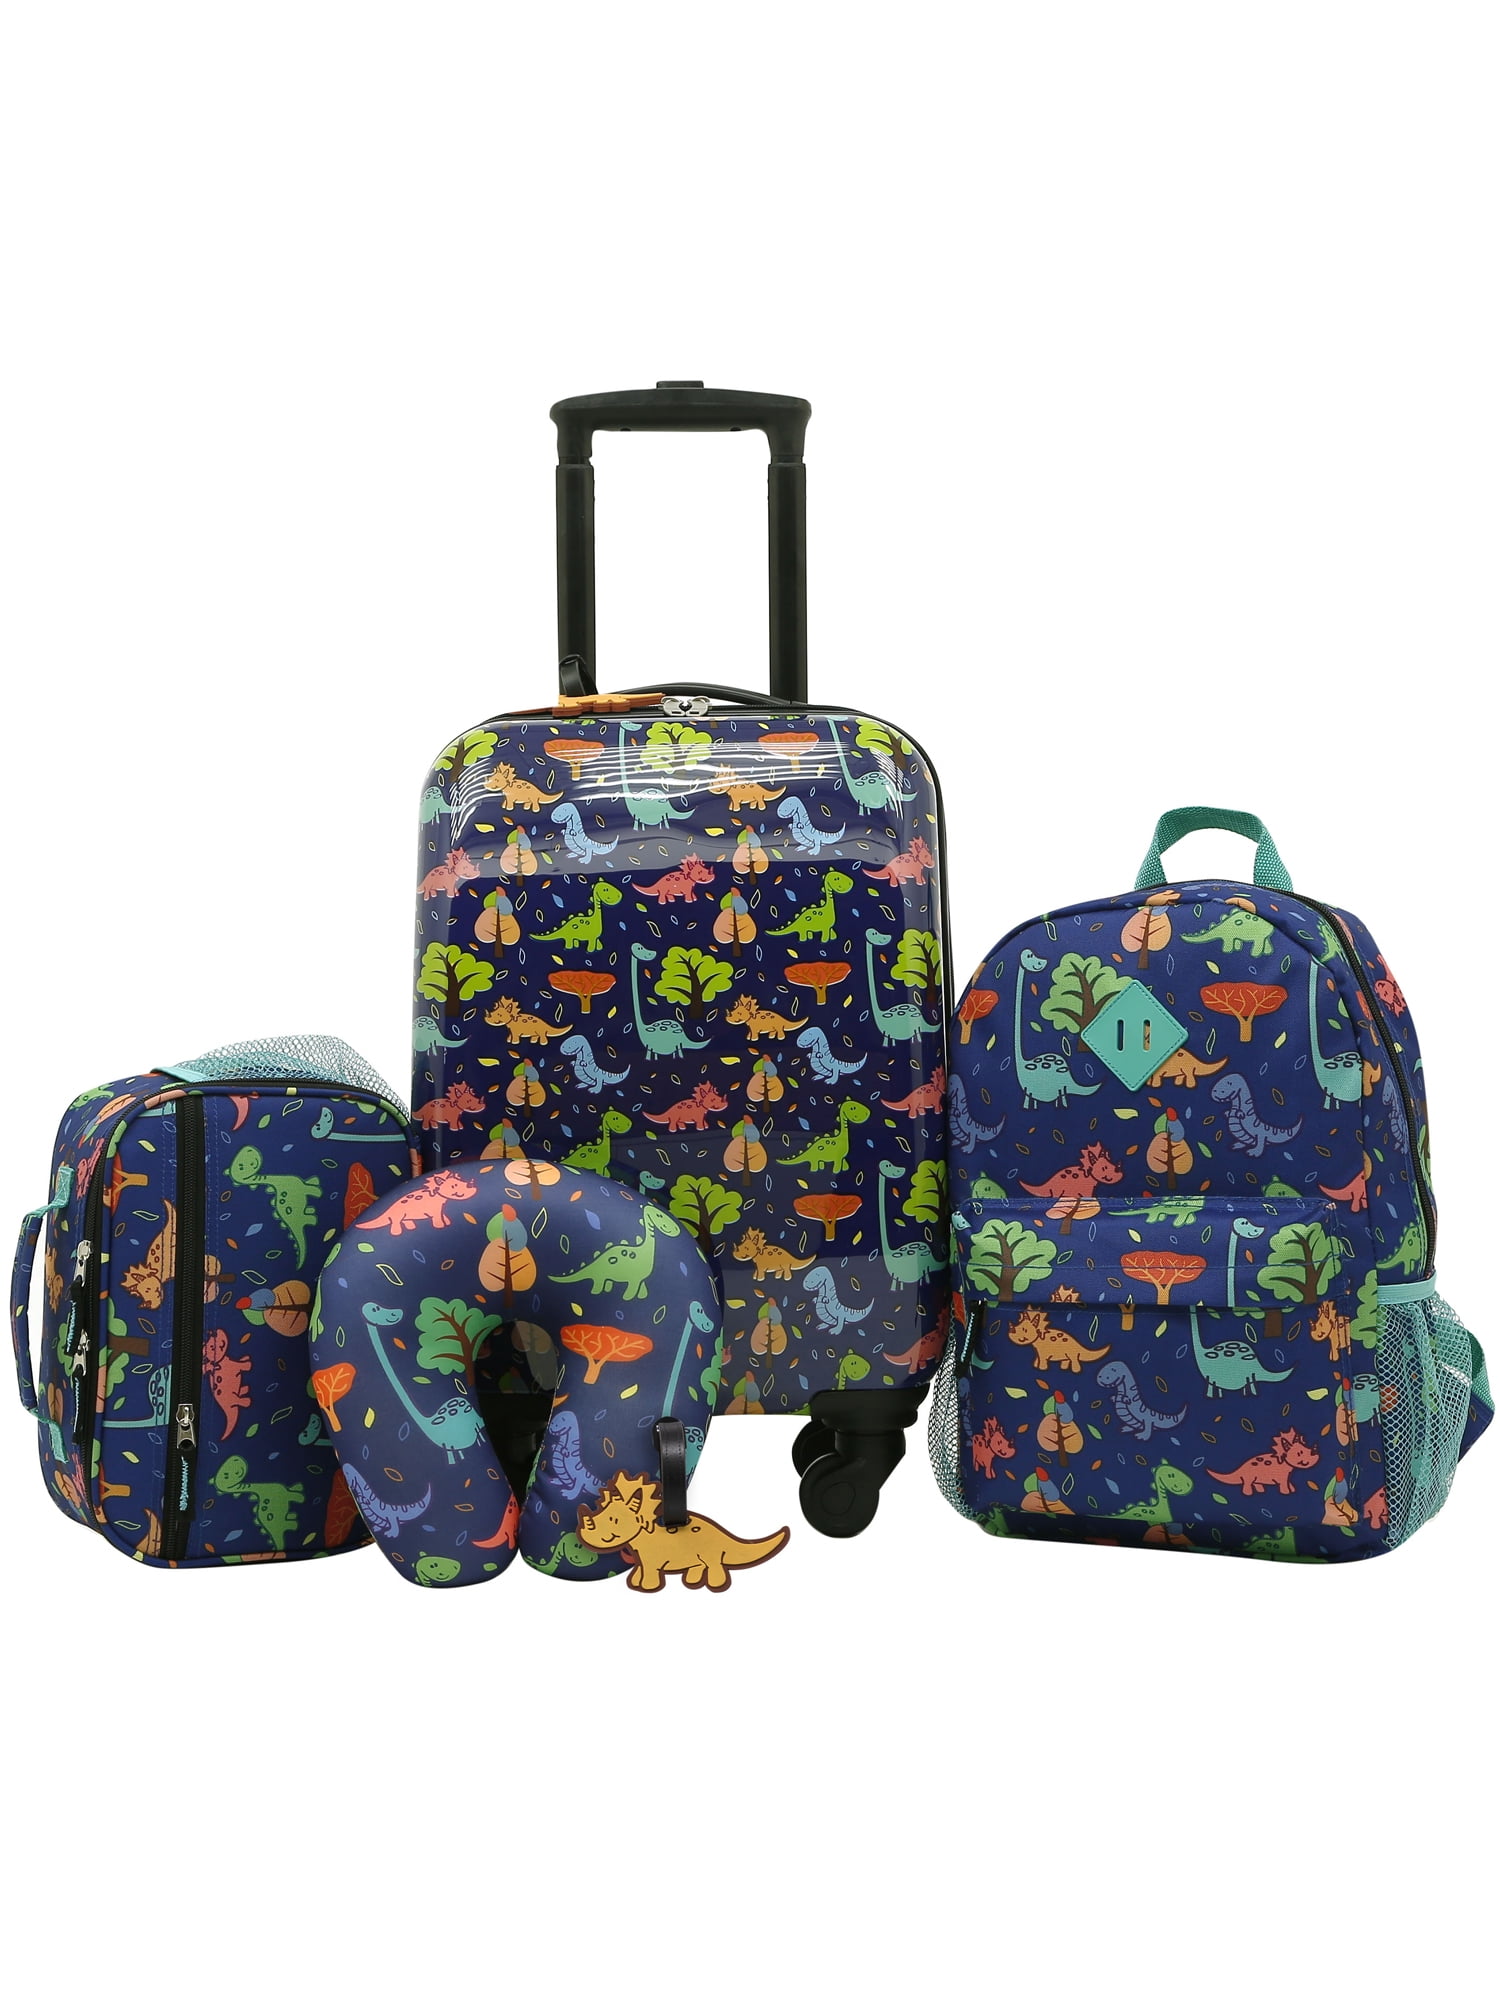 Kids Luggage, Kids Suitcase Luggage